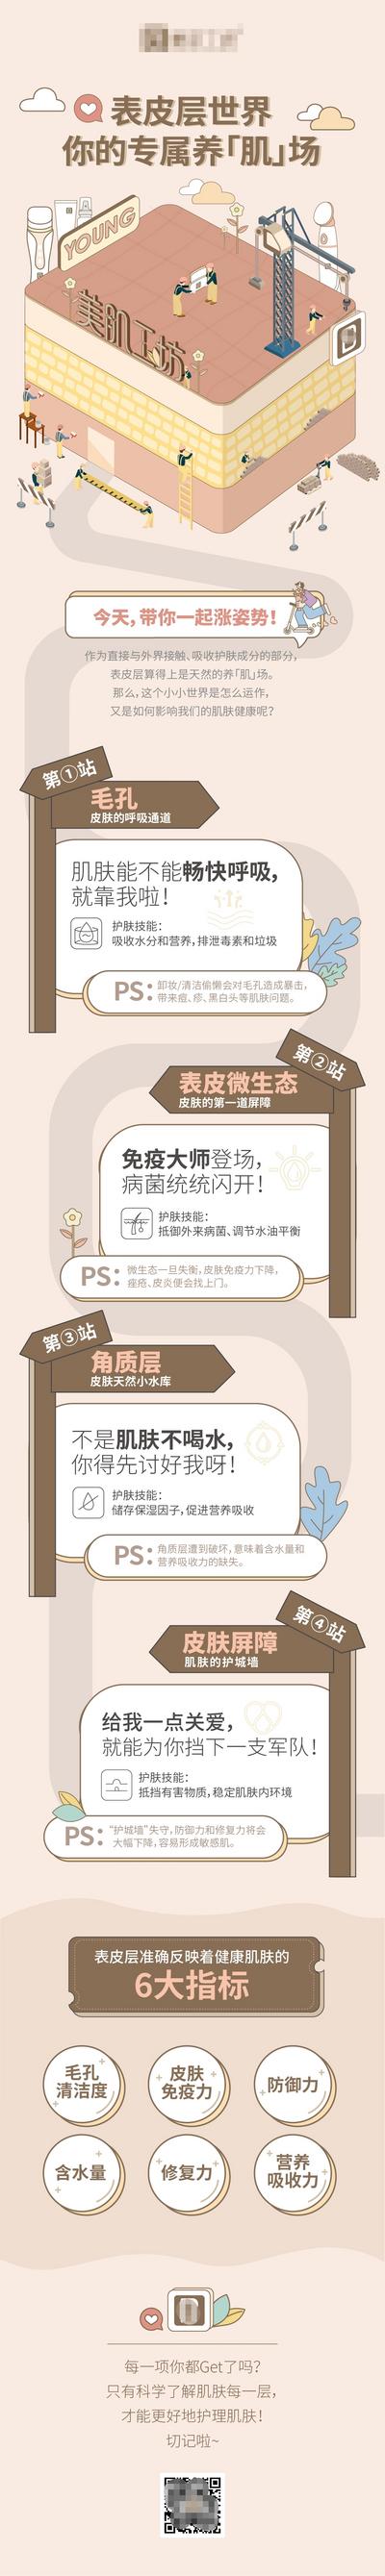 南门网 海报 长图 医美 皮肤管理 活动 2.5d